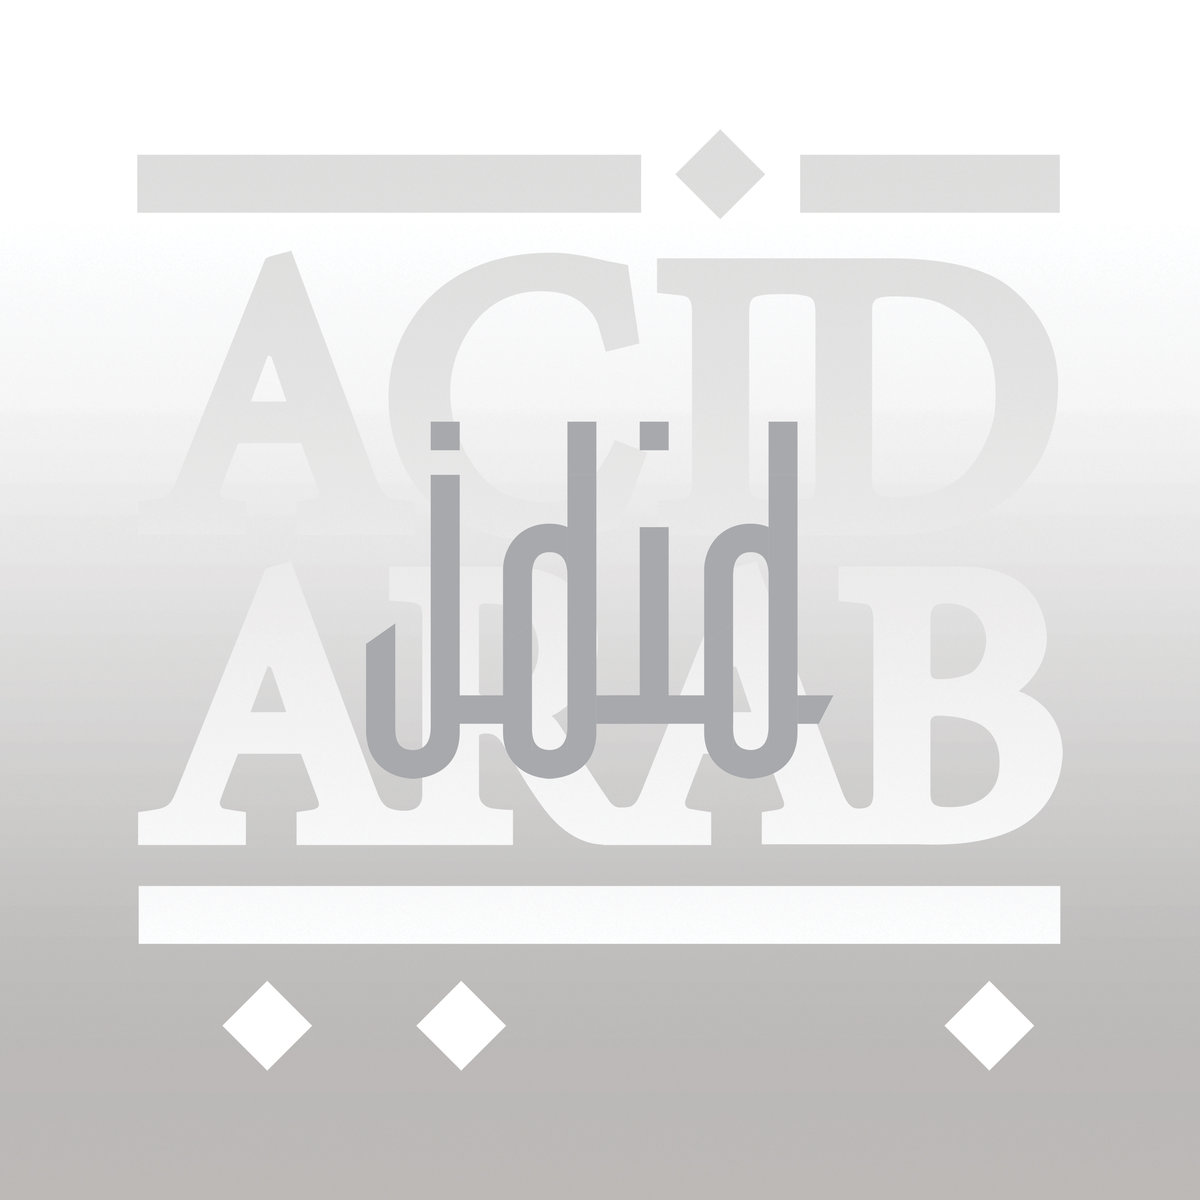 Acid Arab, Cem Yildiz - Ejma